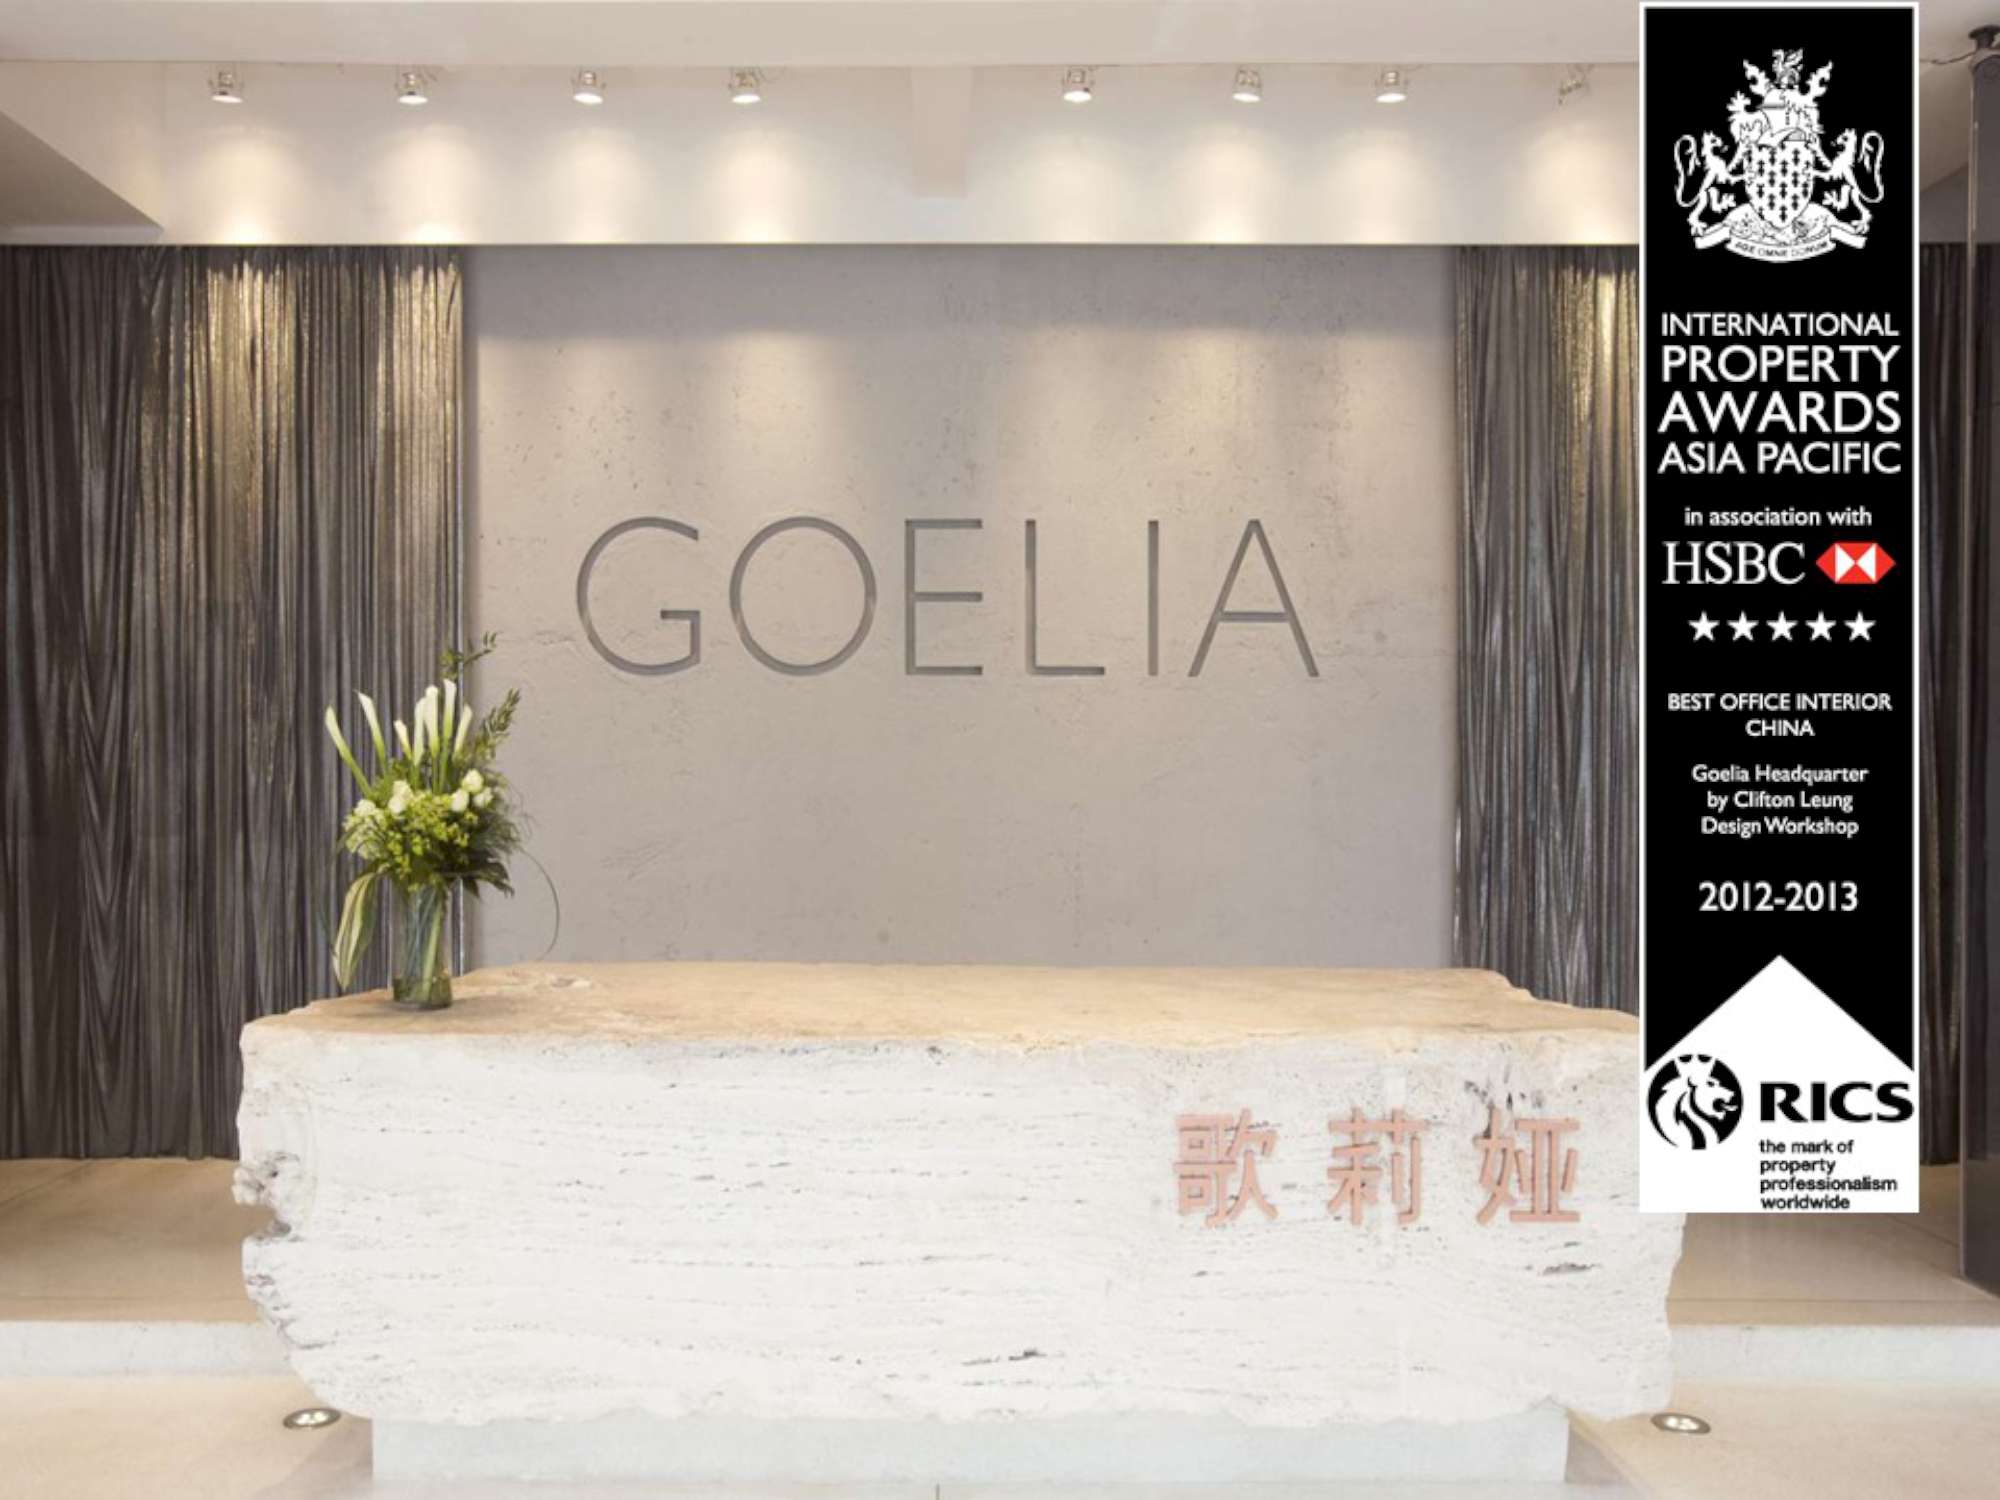 Goelia Headquarters 12 2000